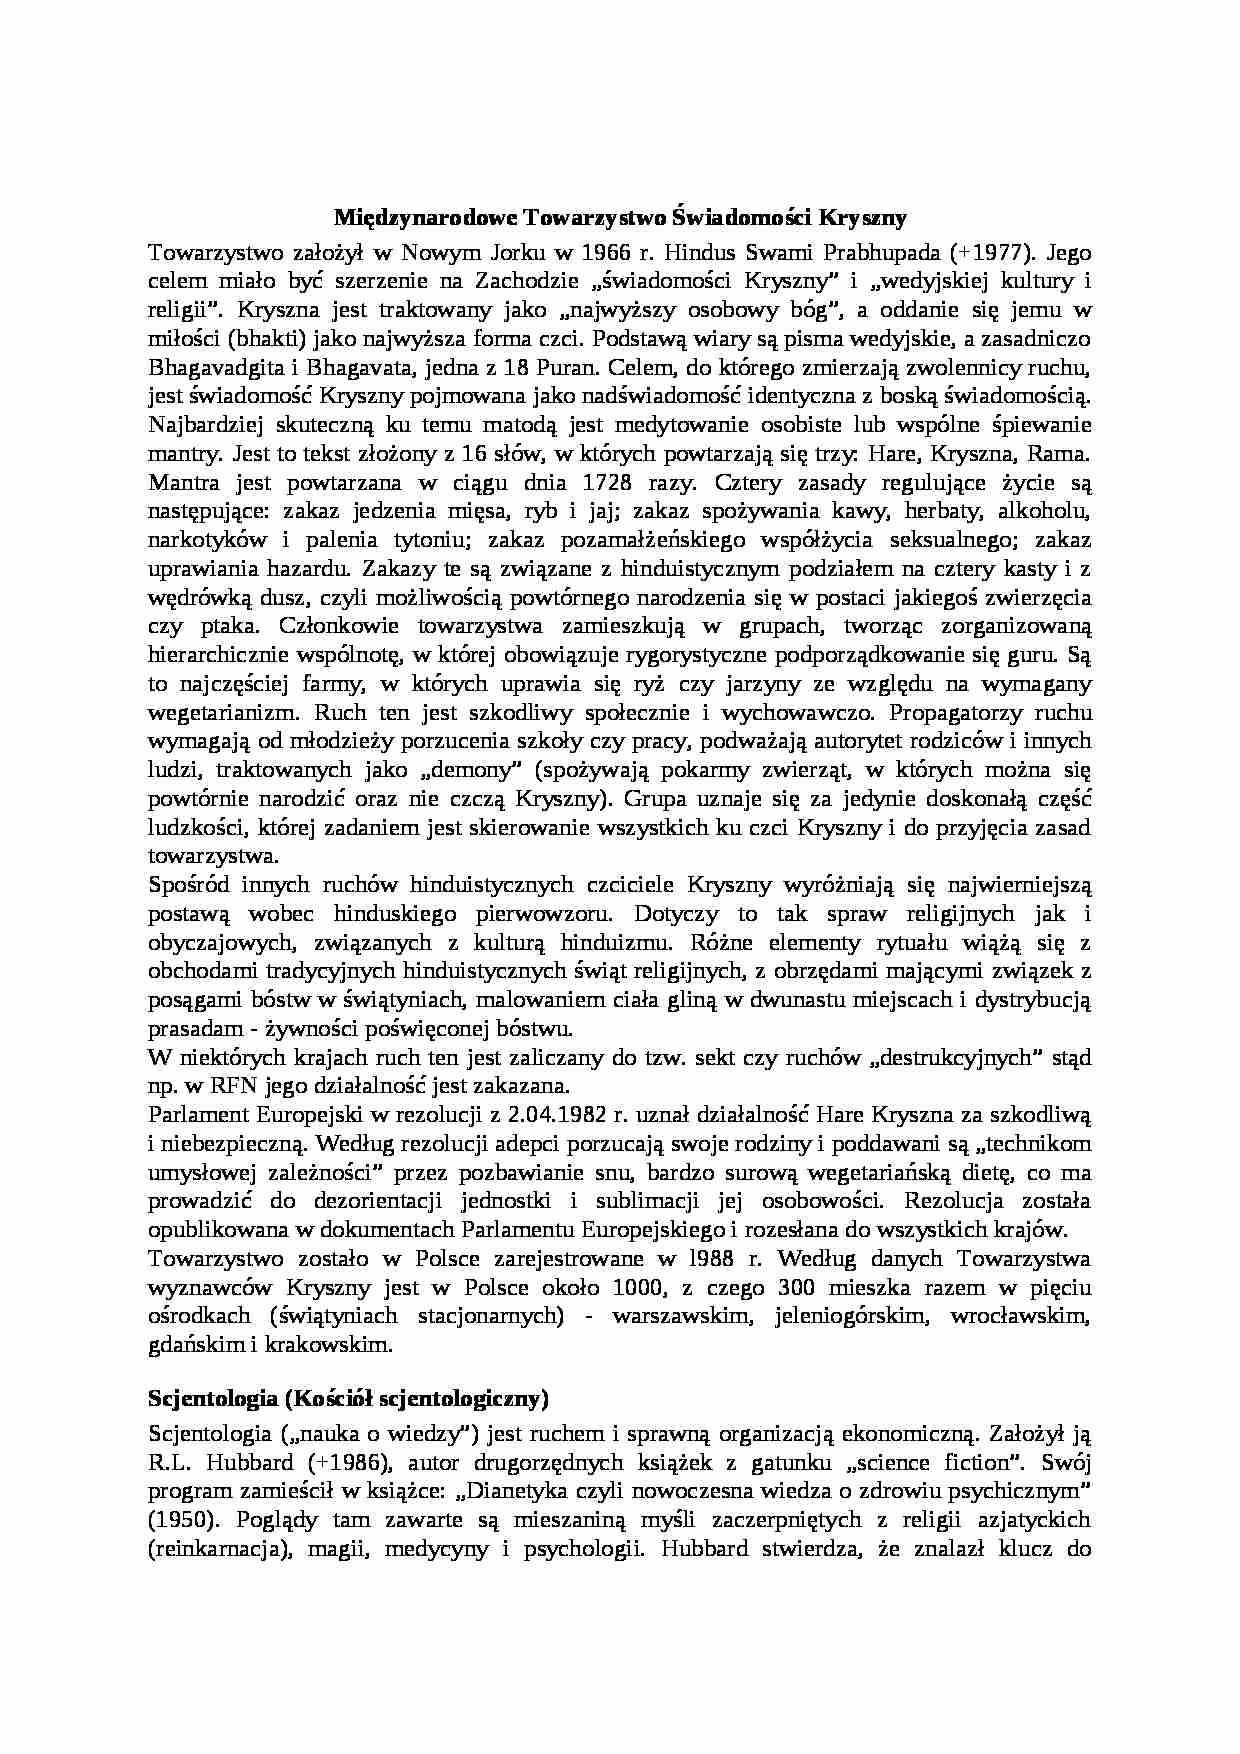 Międzynarodowe Towarzystwo świadomości - Kryszny - omówienie  - strona 1